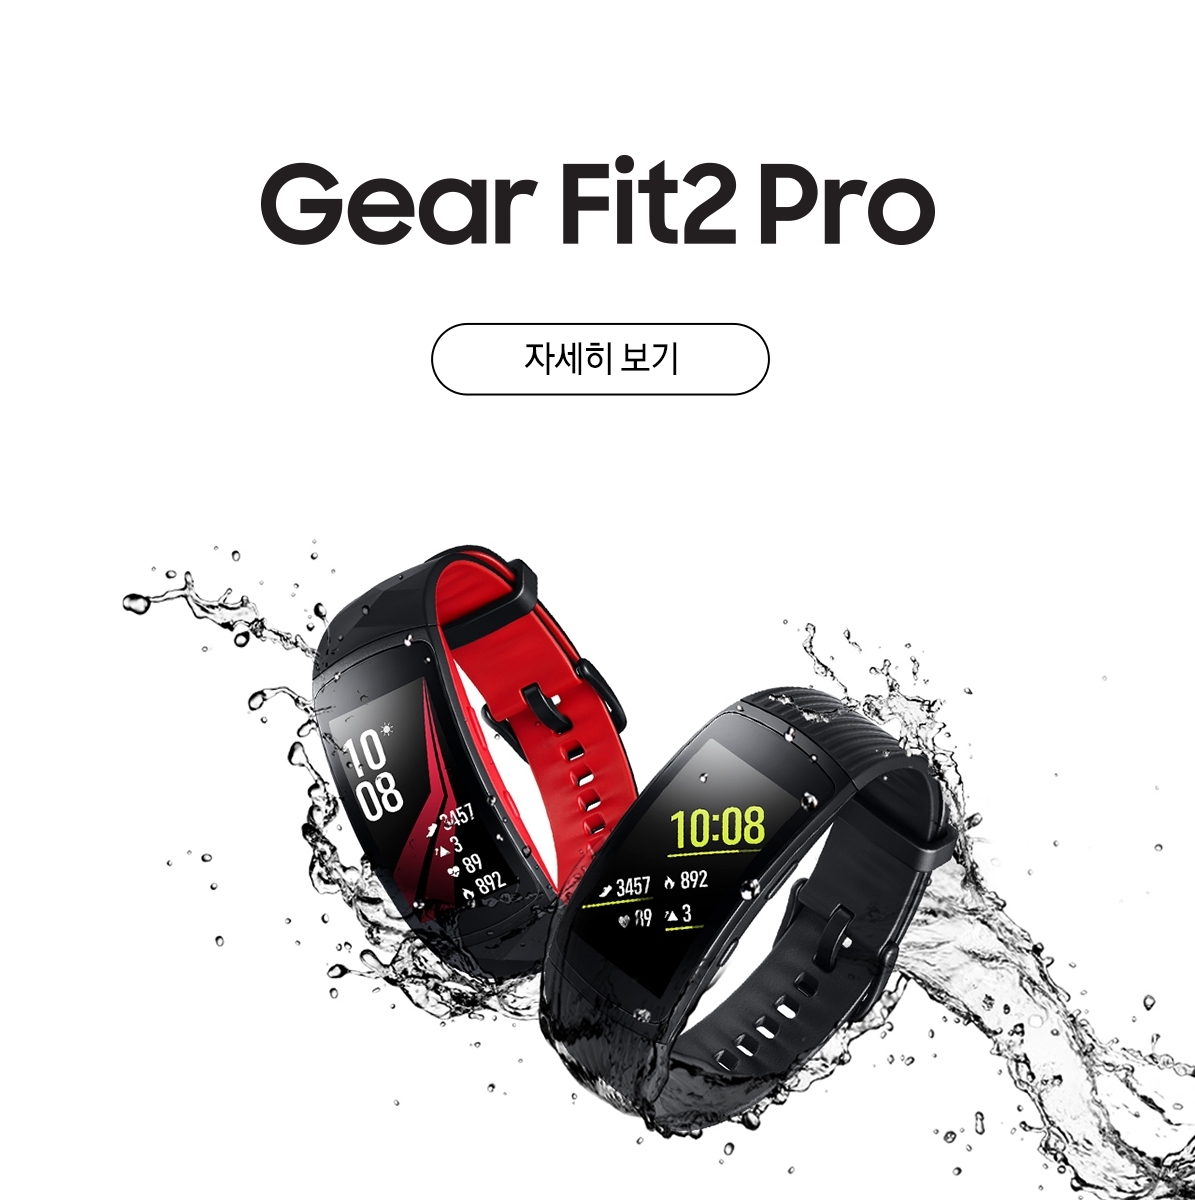  Gear Fit2 Pro